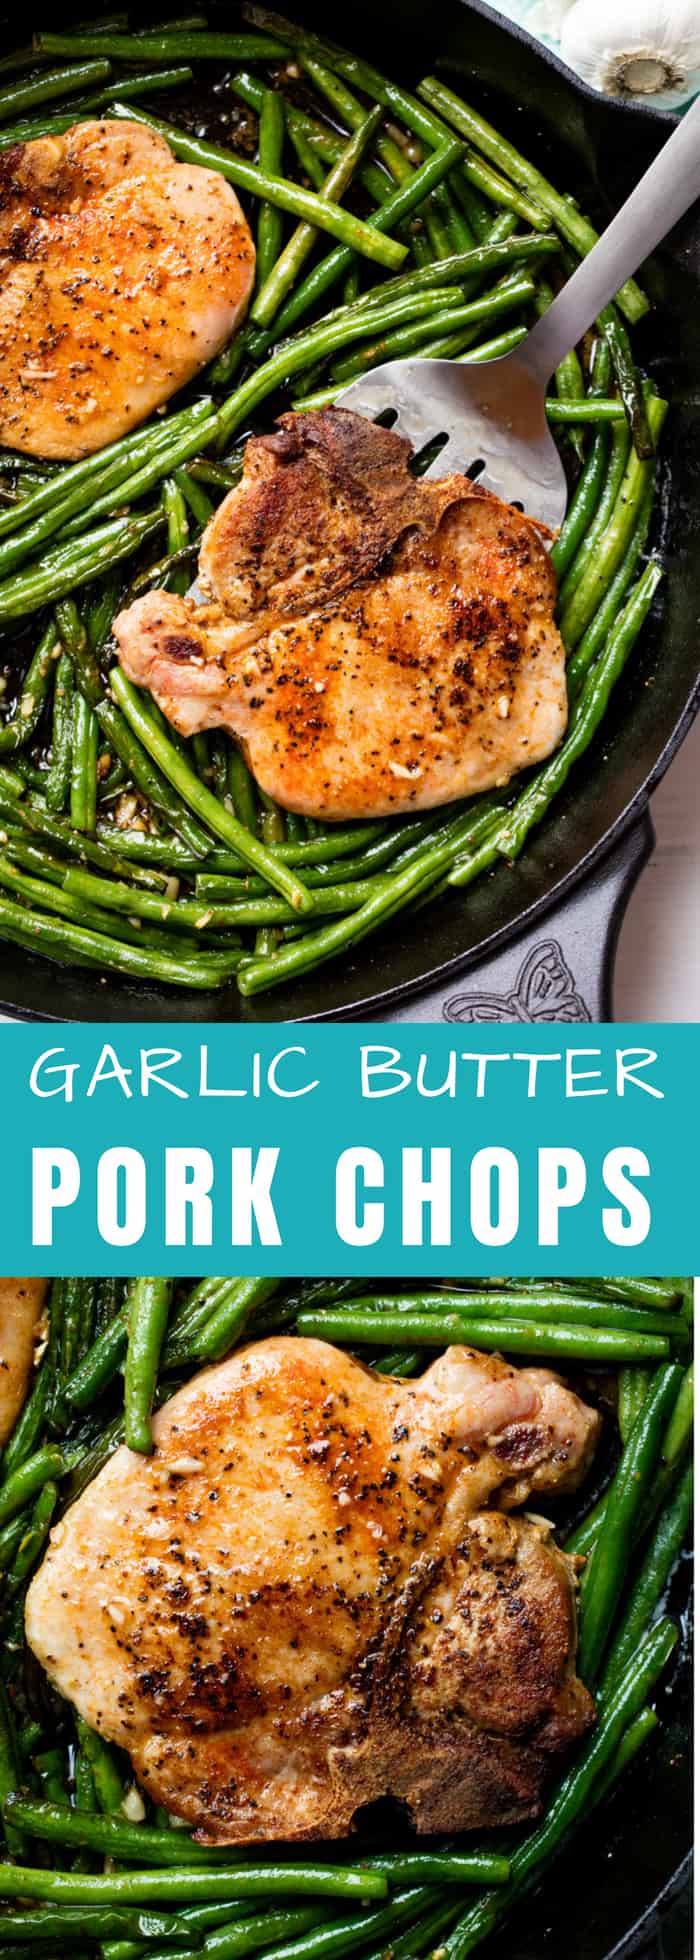 Skillet Garlic Butter Pork Chops and Green Beans